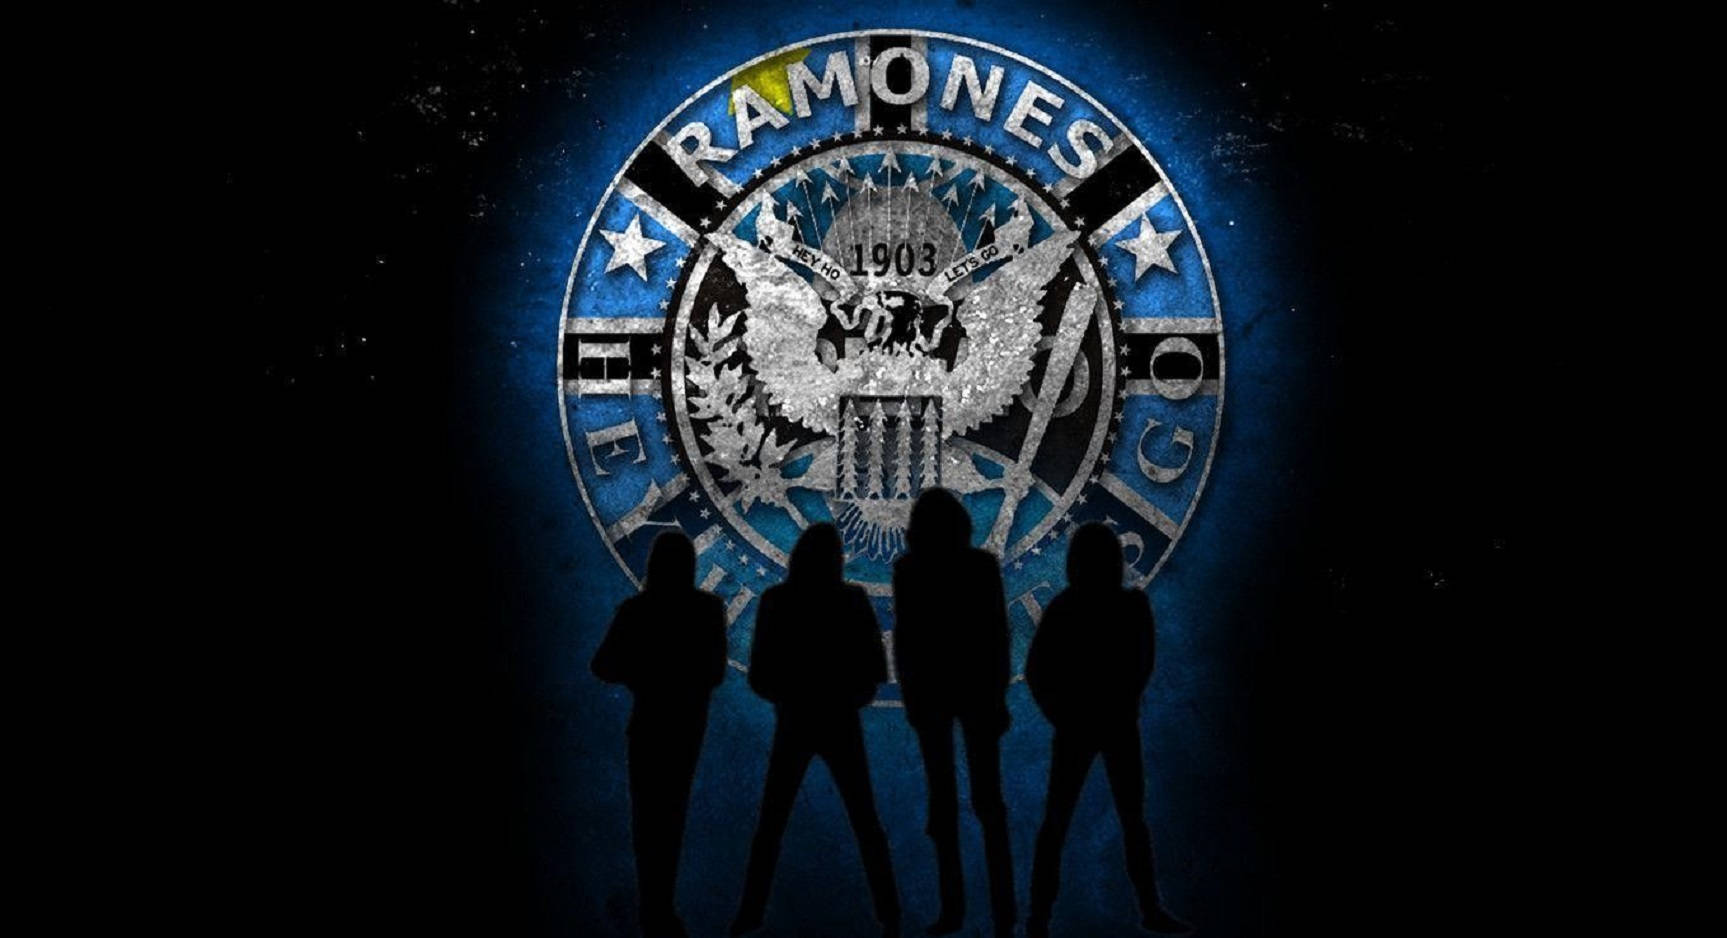 American Rock Band Ramones' Iconic Sealed Illustration Background